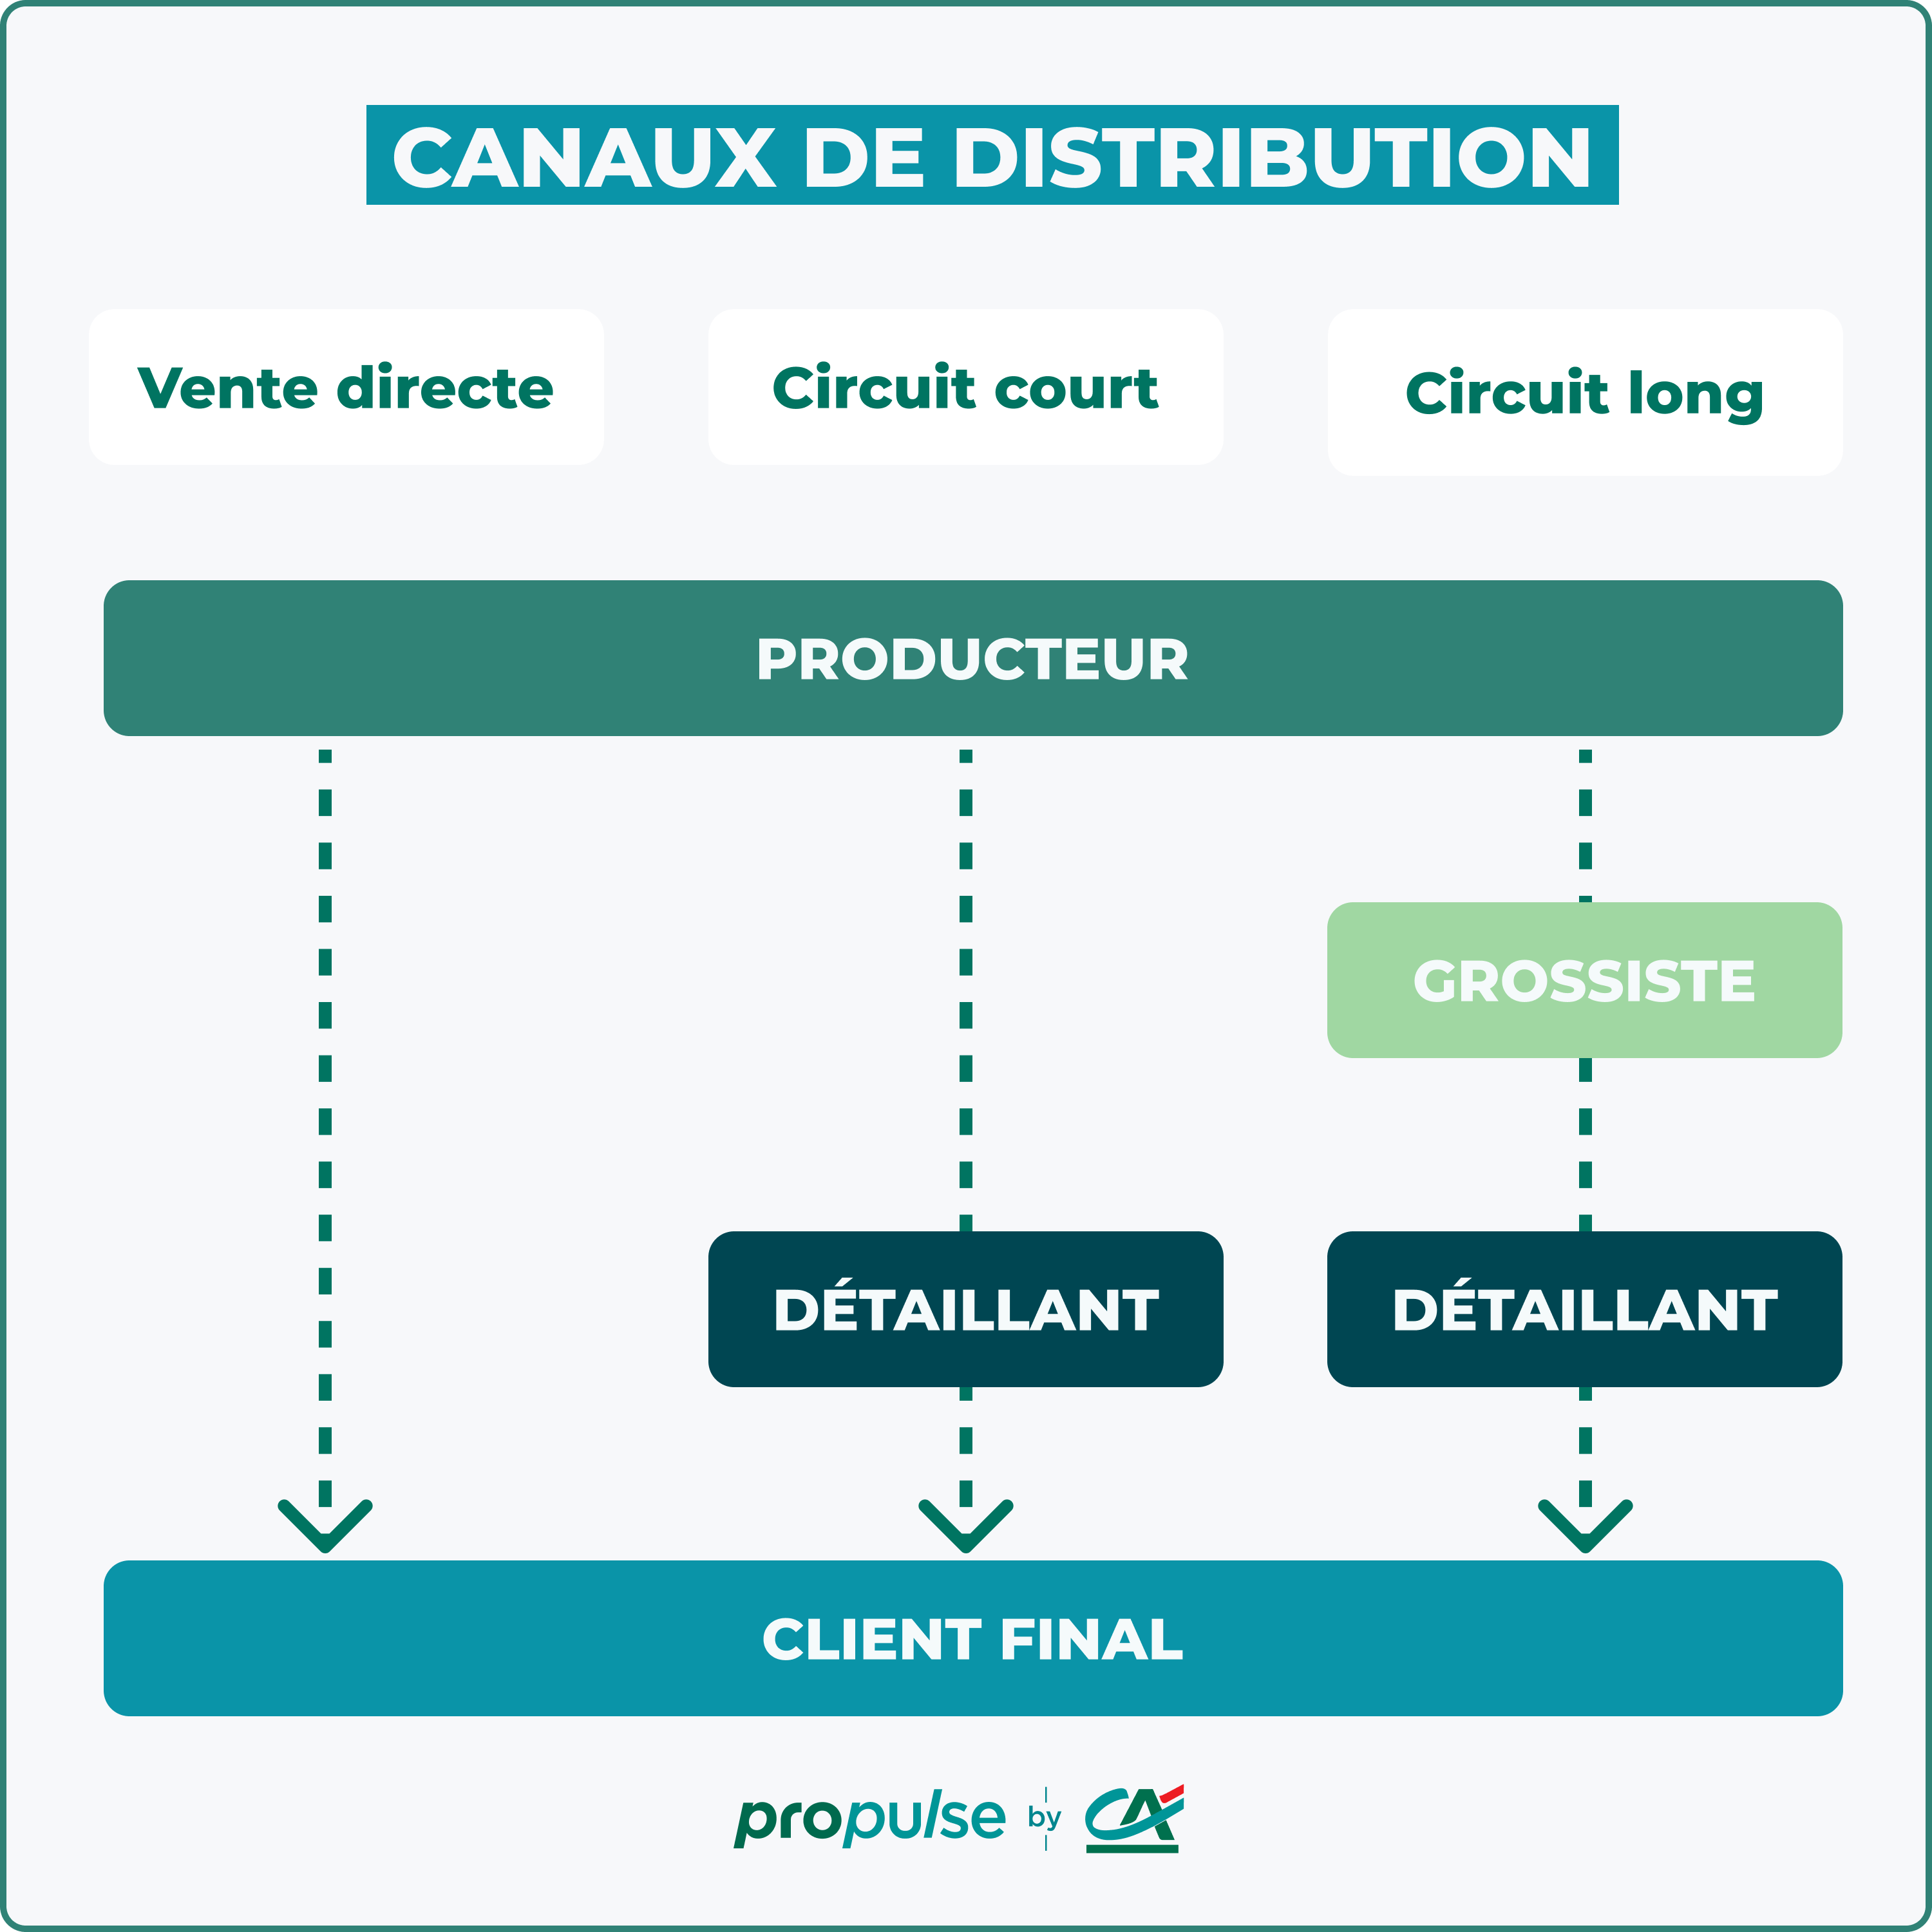 Les canaux de distribution